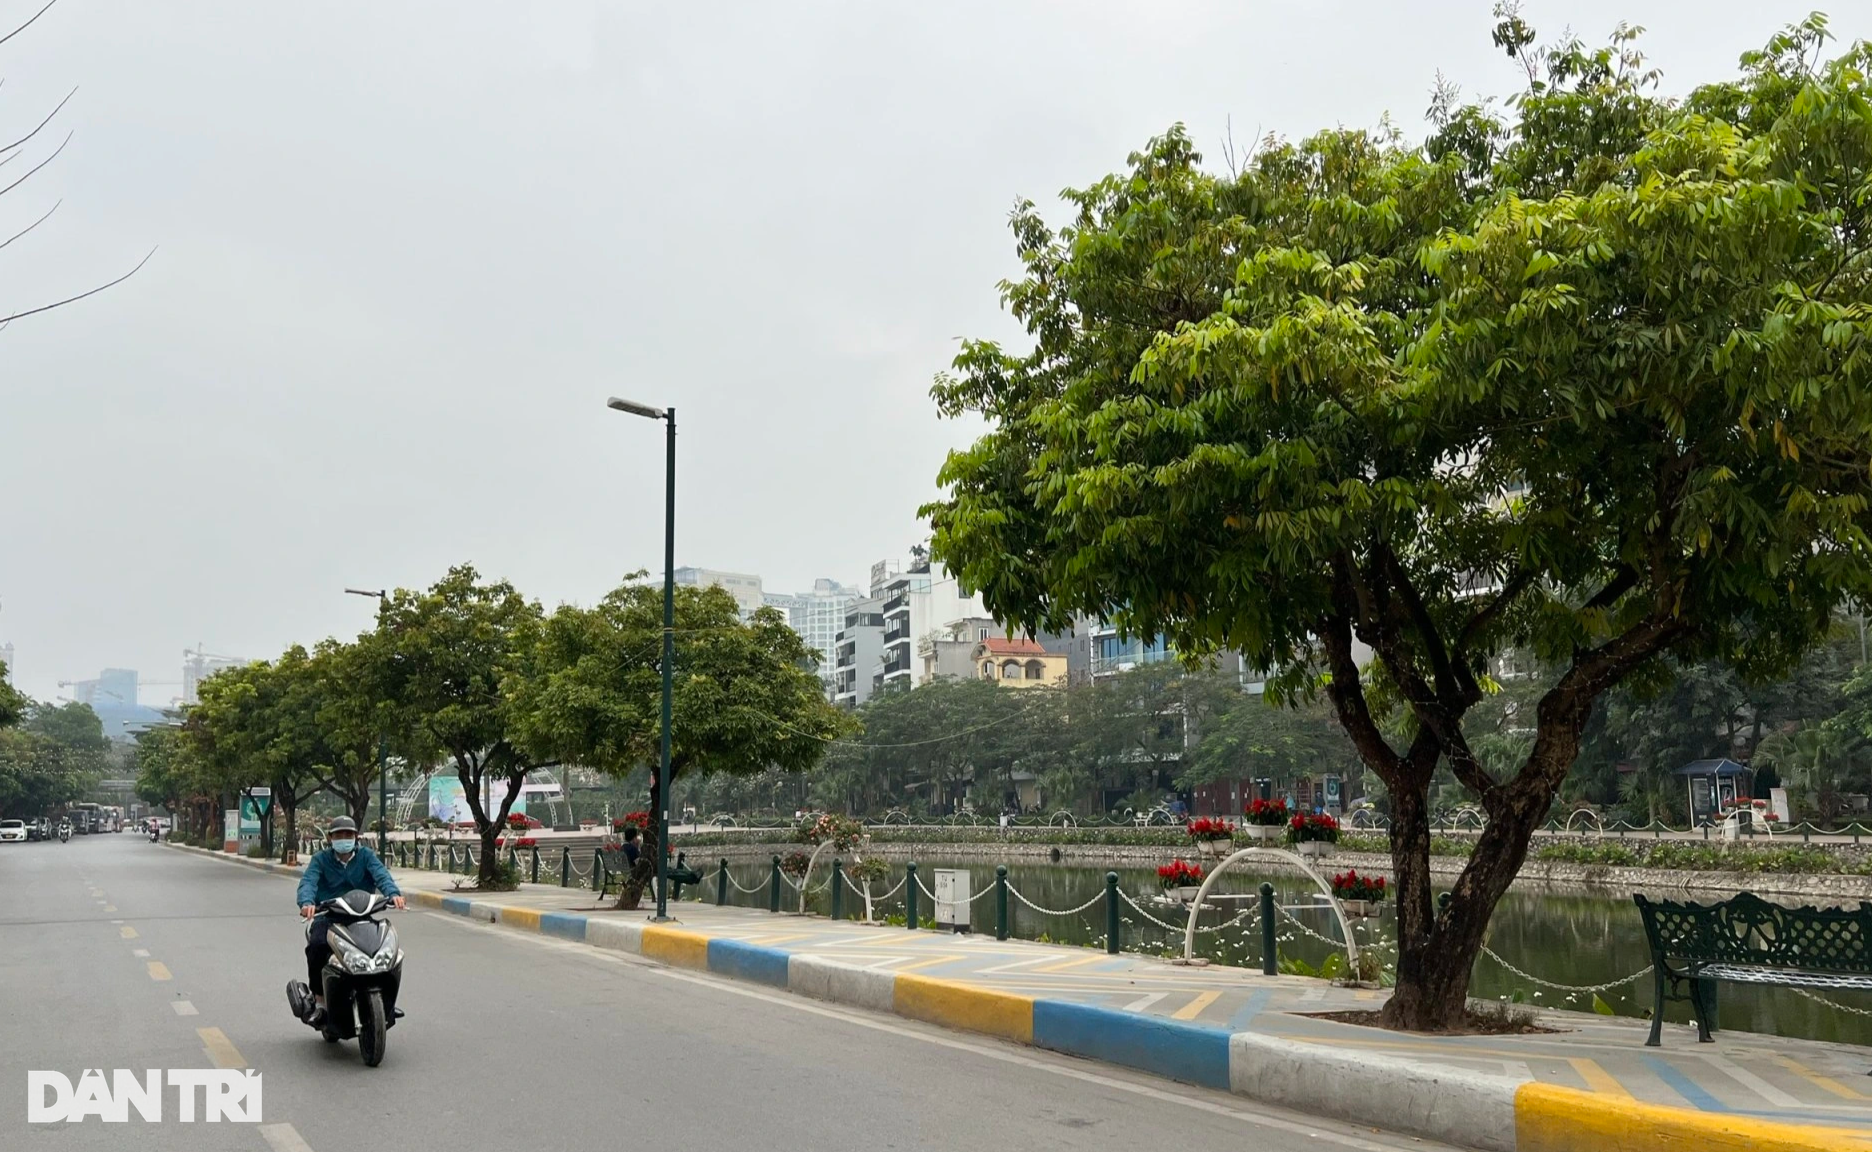 Sở Xây dựng Hà Nội nói về đề nghị di chuyển 55 cây ở phố Vũ Tuấn Chiêu - 2